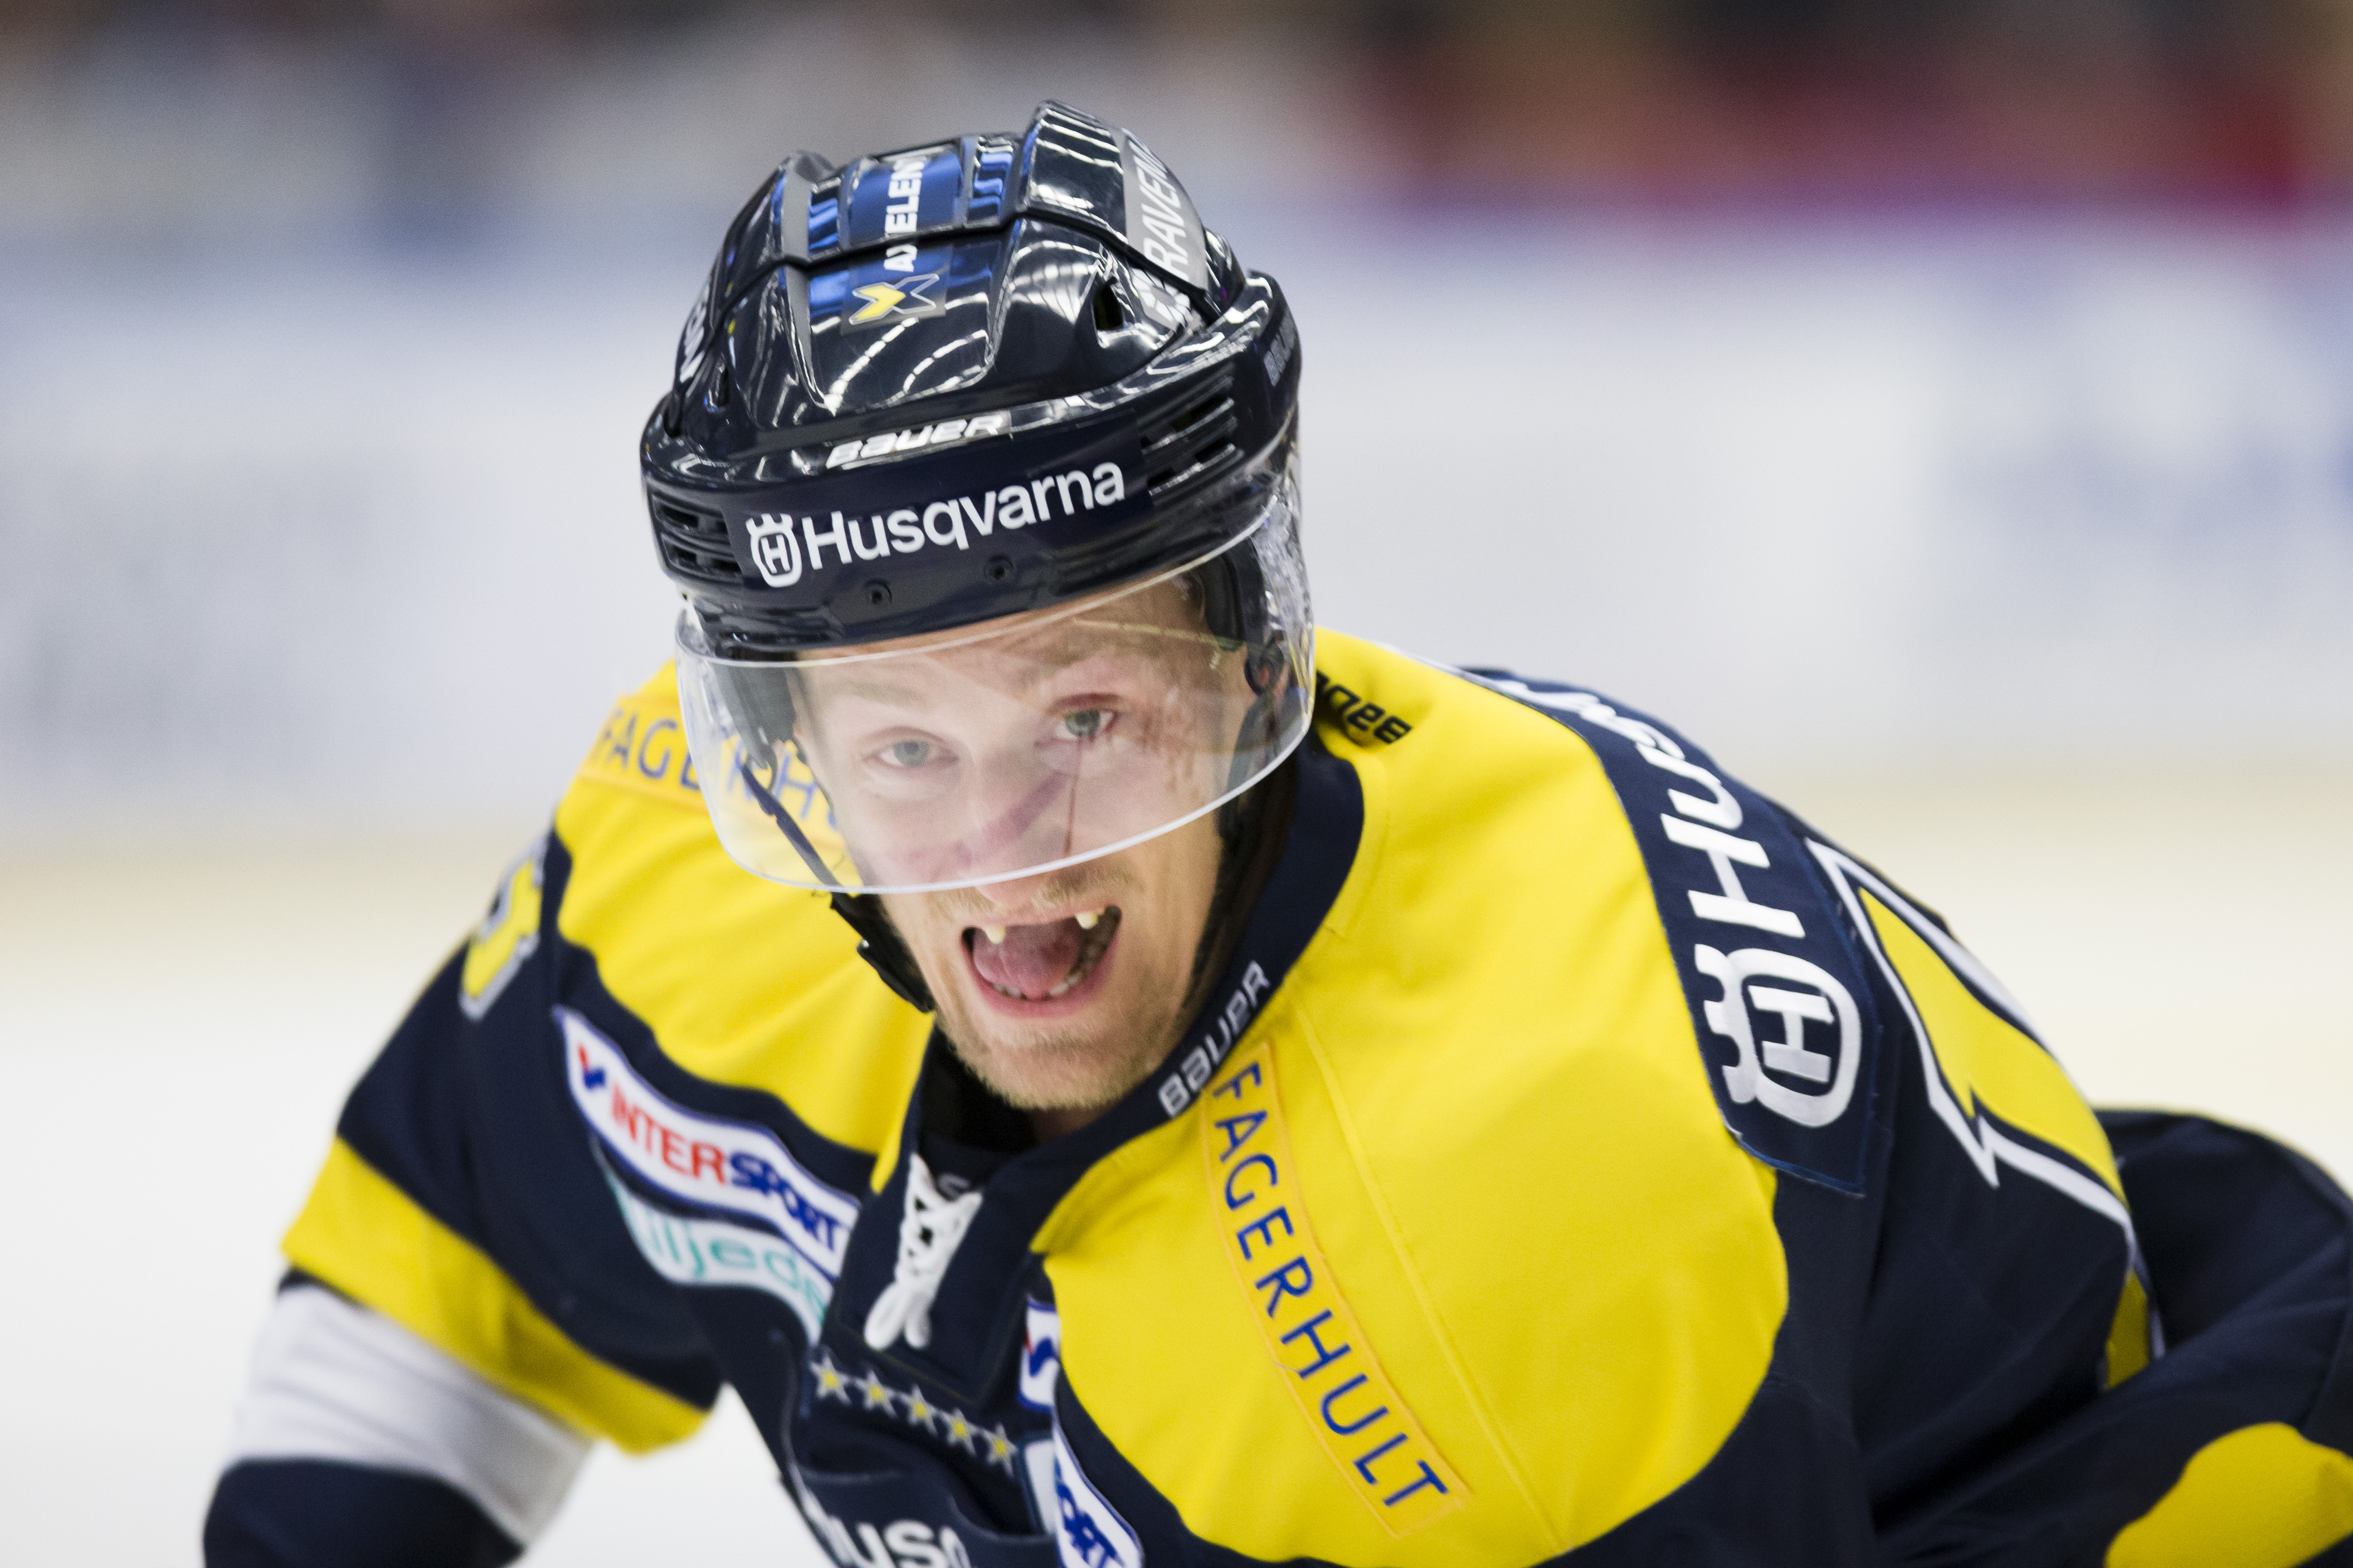 Hv71: ”Har aldrig varit med om så många interna slagsmål som i HV71 förra säsongen”